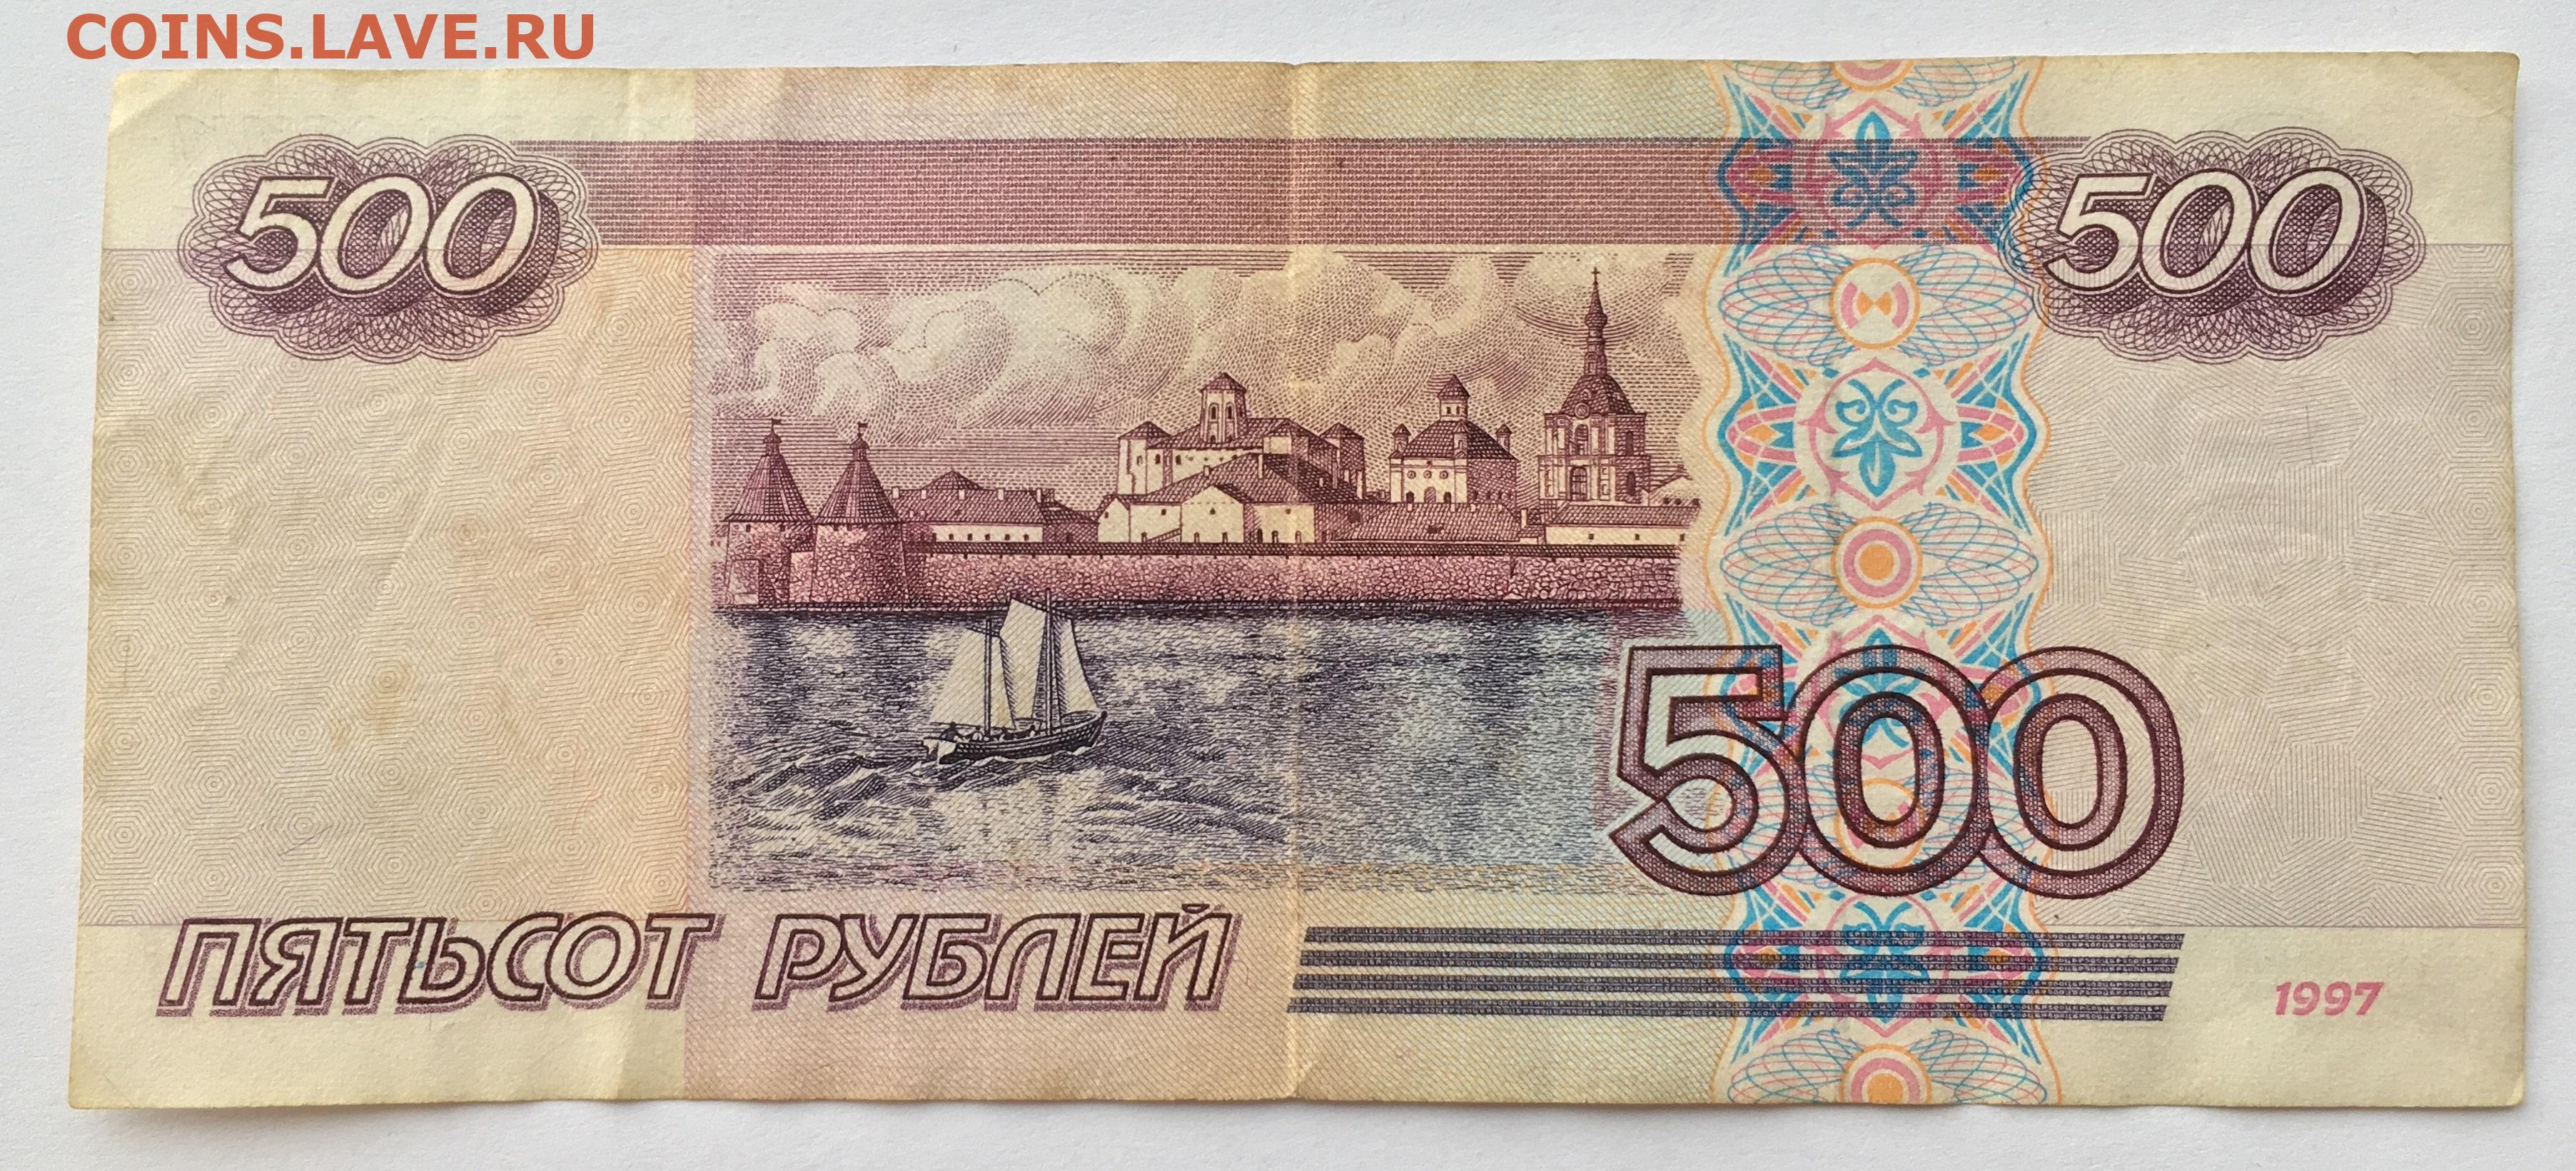 Купюры номиналом 500 рублей. 500 Рублей 1997 (модификация 2004 года). Купюры РФ 500рб. Купюры номиналом 500 рублей 1997 года.